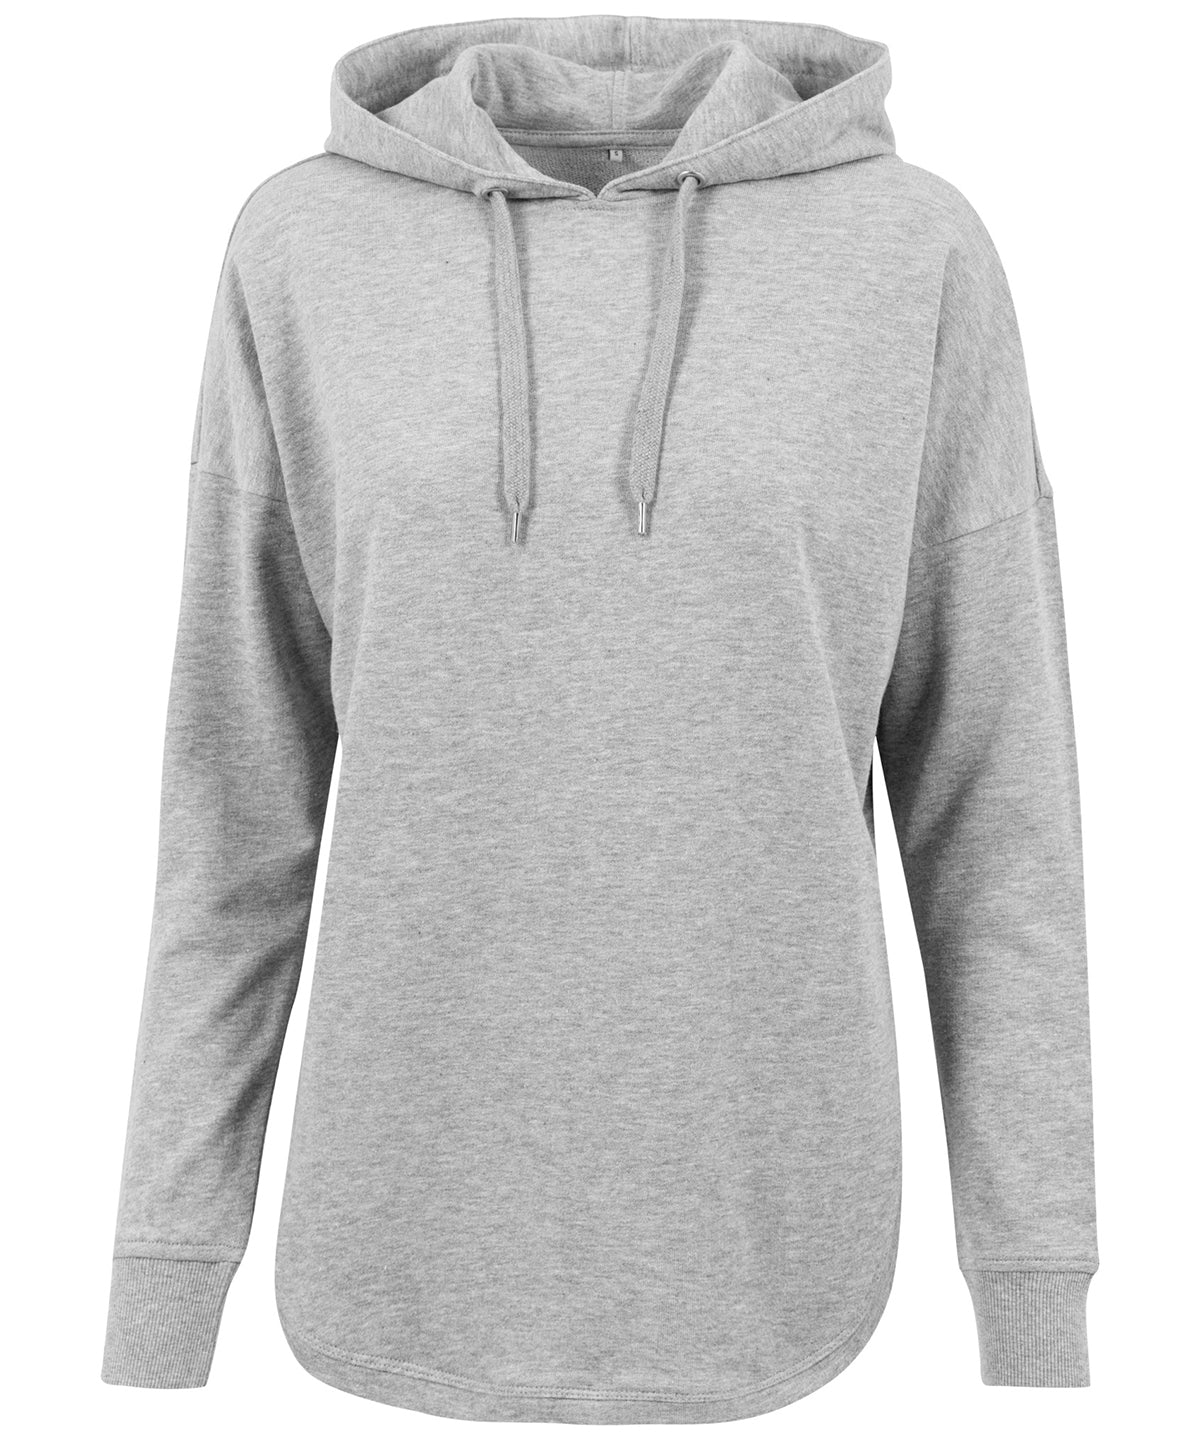 Personalised Hoodies - Black Build Your Brand Women's oversized hoodie